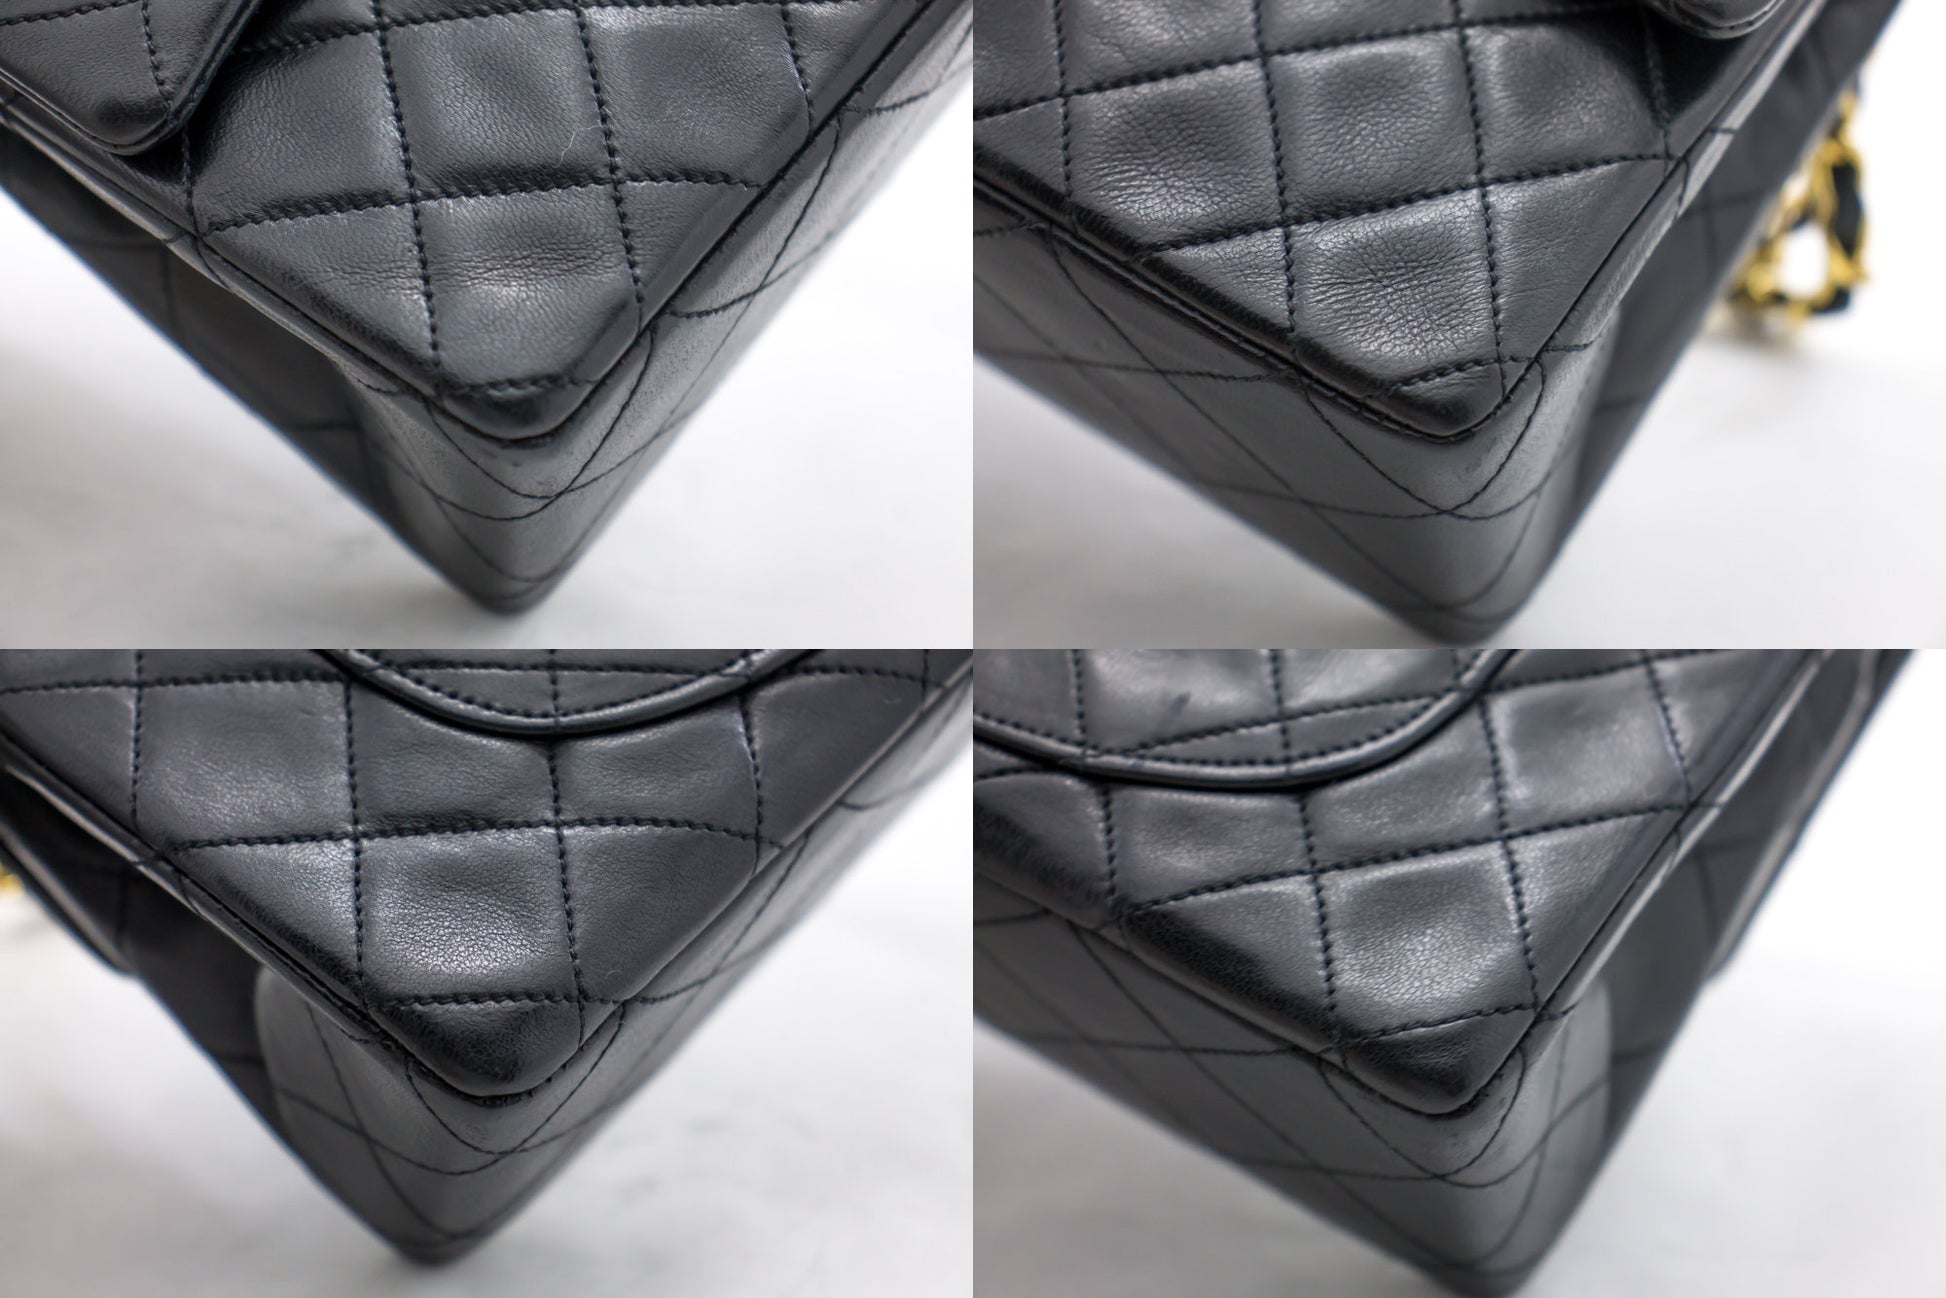 Chanel Shoulder bag - Catawiki